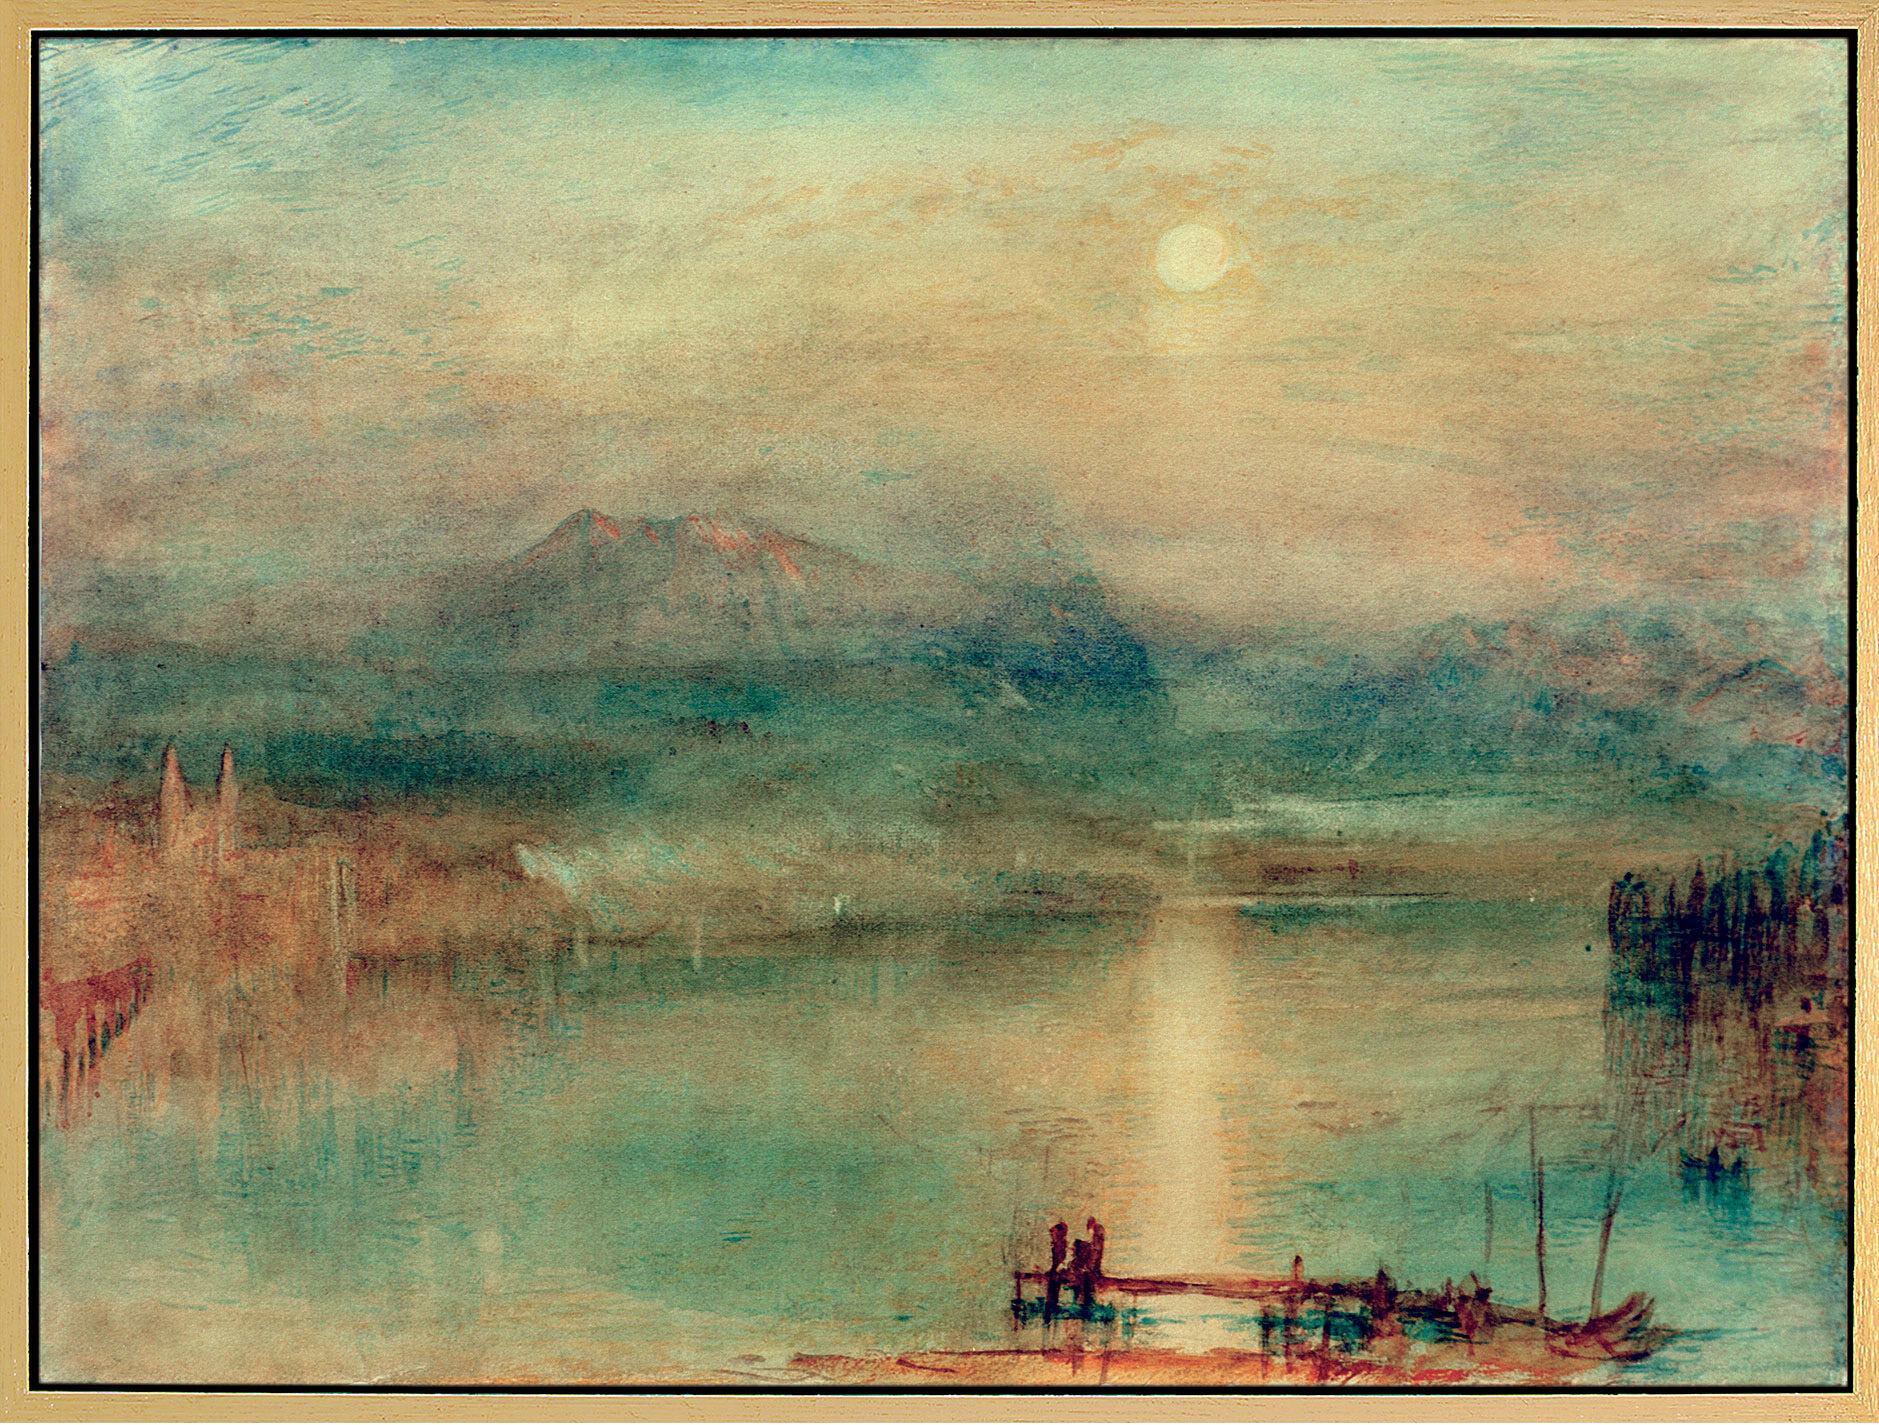 Picture "Moonlight over Lake Lucerne" (c. 1841-44), framed by William Turner